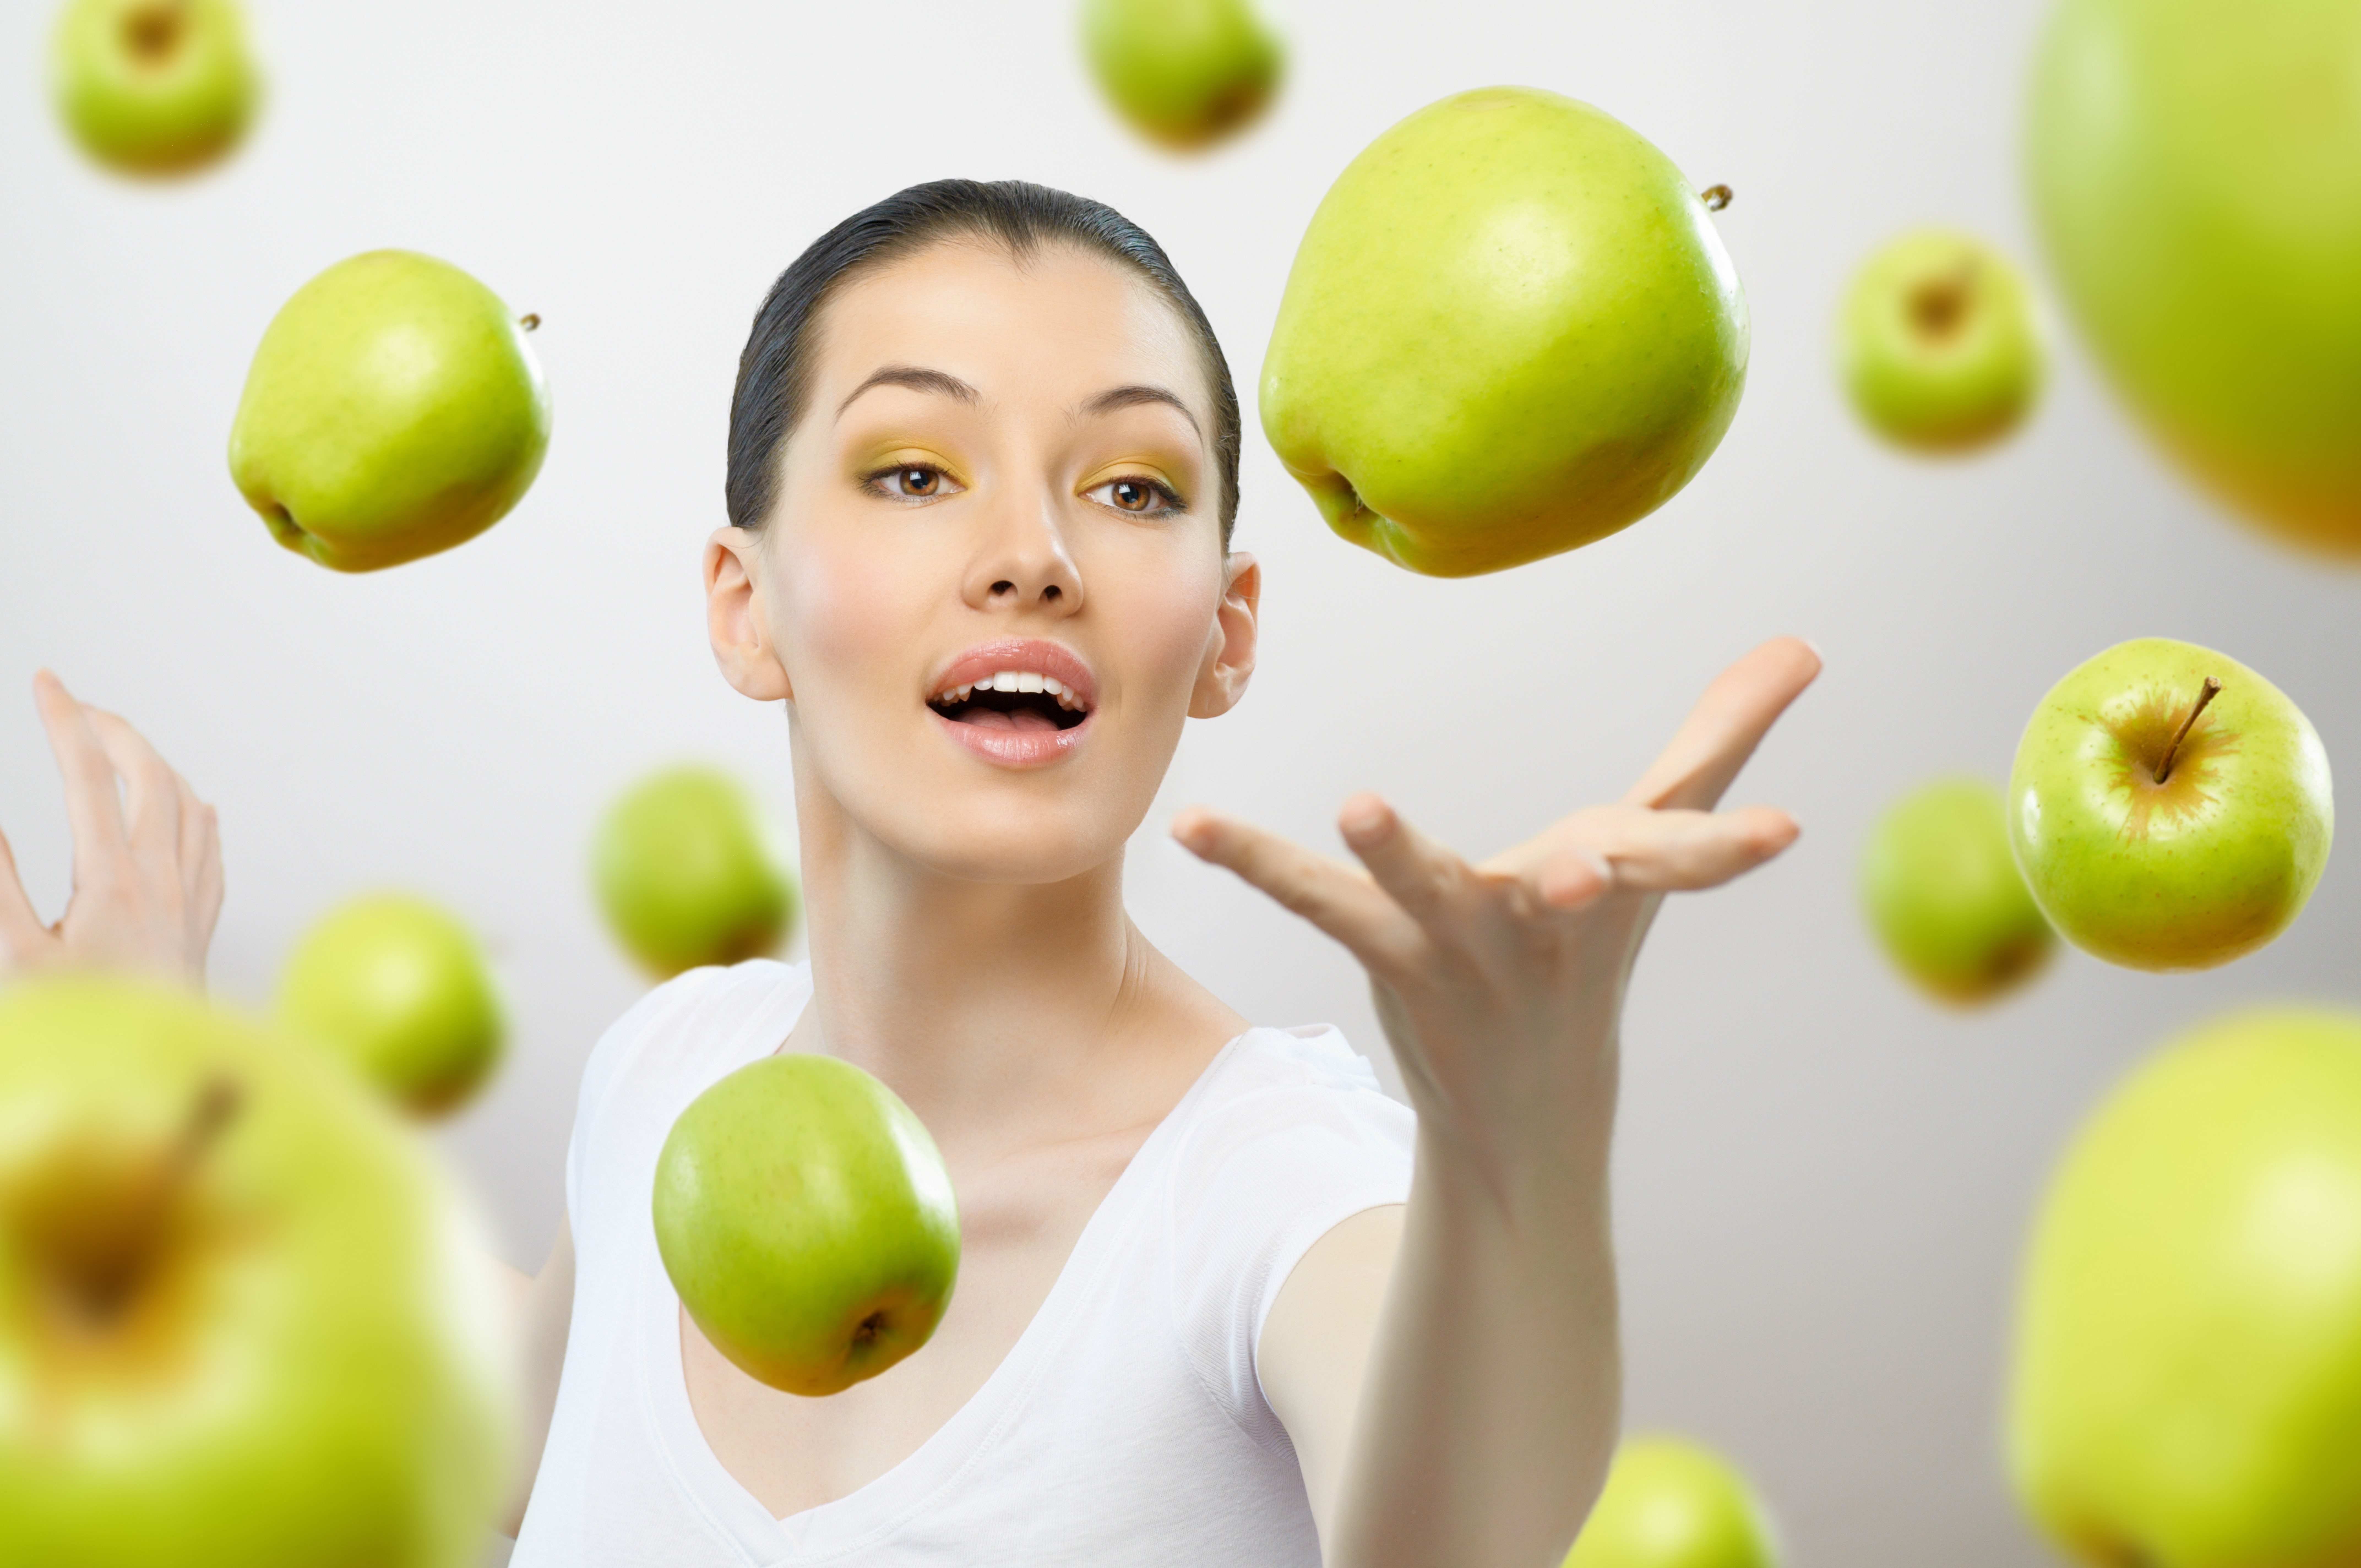 Съем яблок. Девушка с яблоком. Девушка с яблоком в руке. Девушка с фруктами. Девушка ест яблоко.